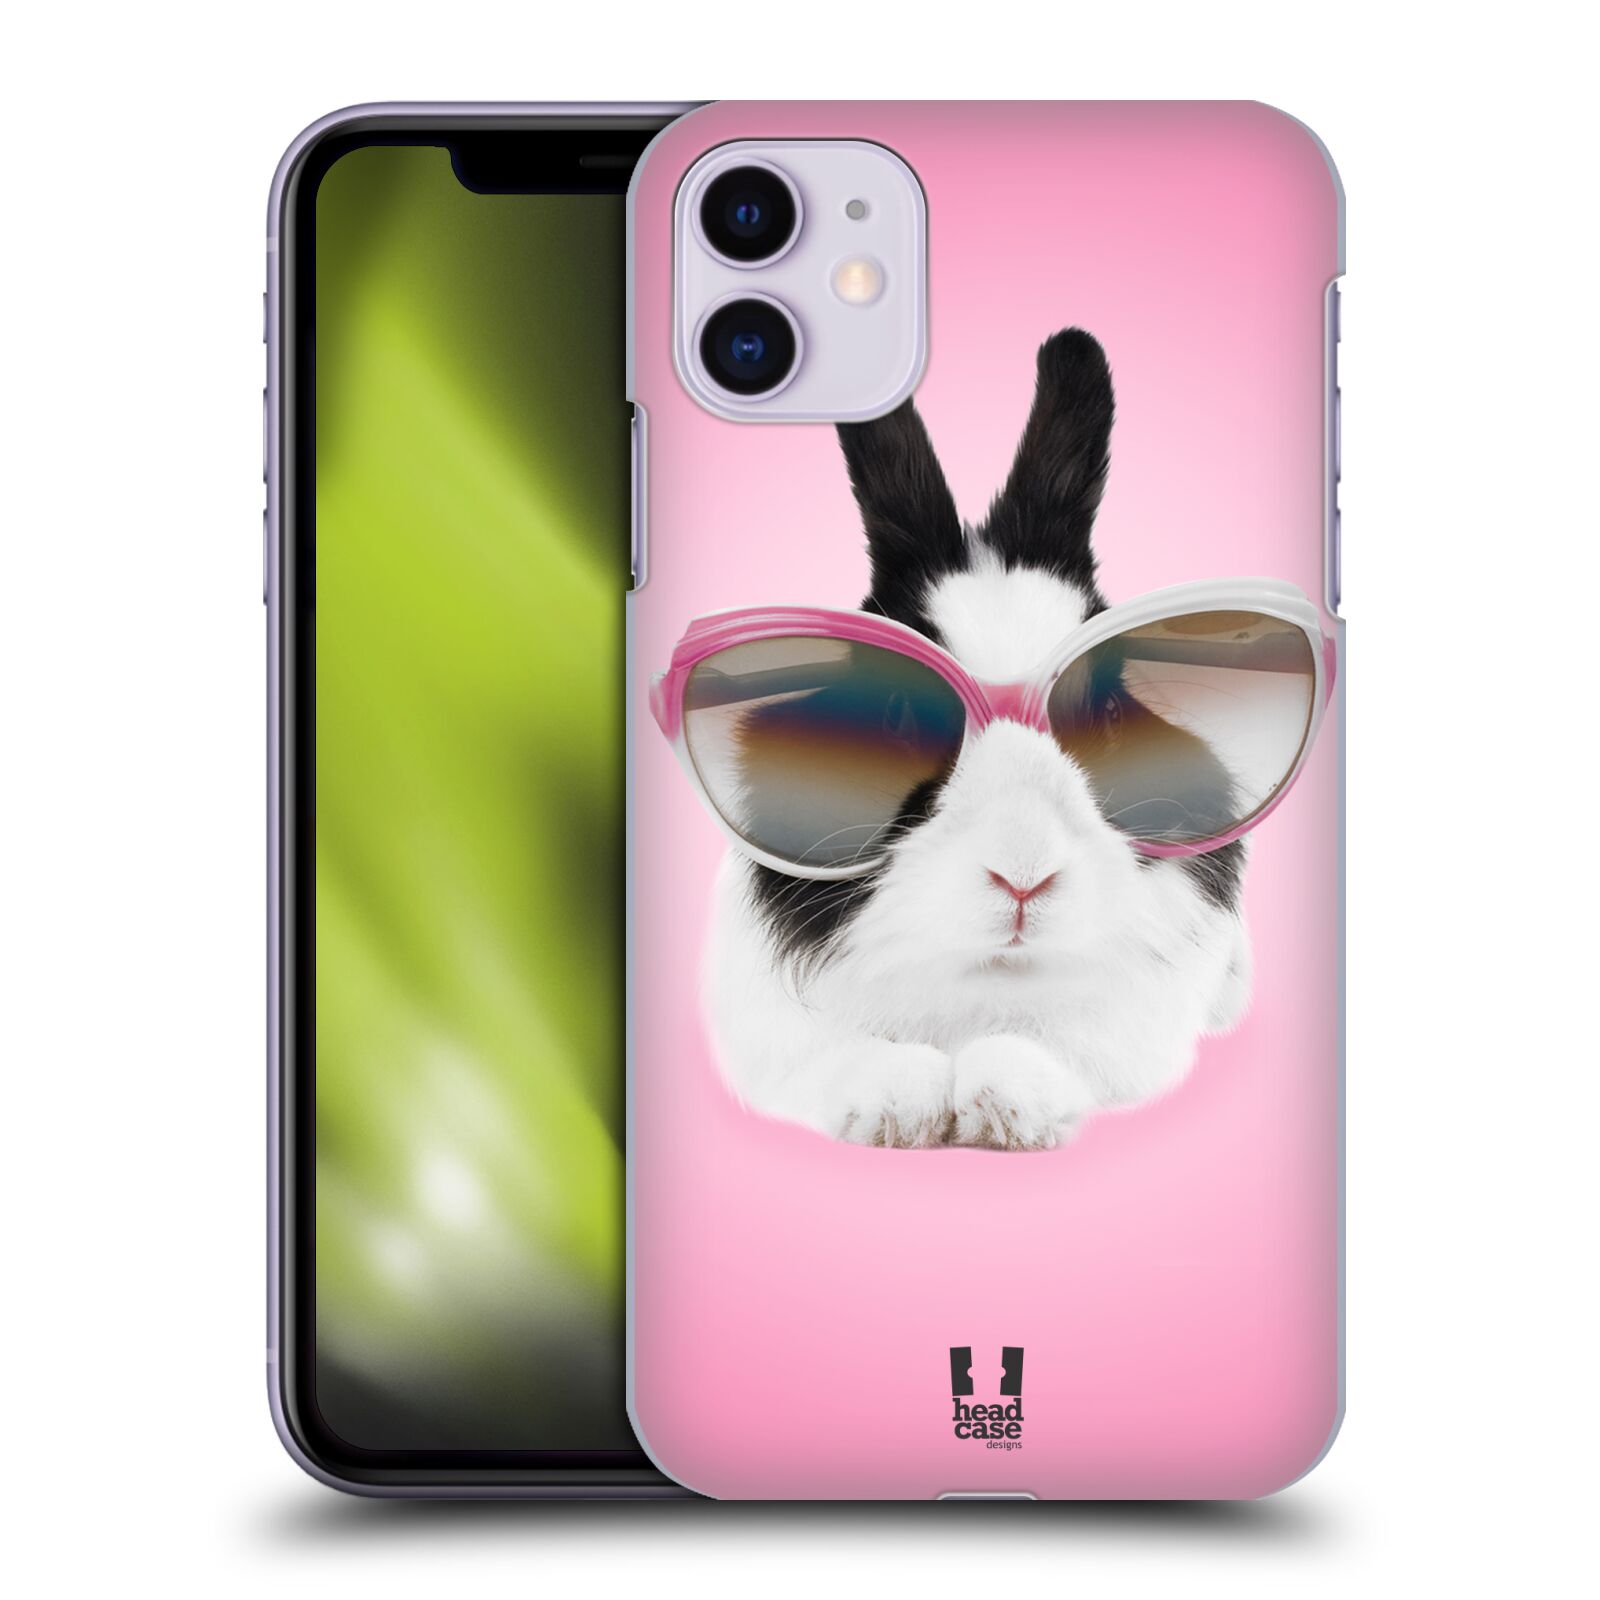 Pouzdro na mobil Apple Iphone 11 - HEAD CASE - vzor Legrační zvířátka roztomilý králíček s brýlemi růžová